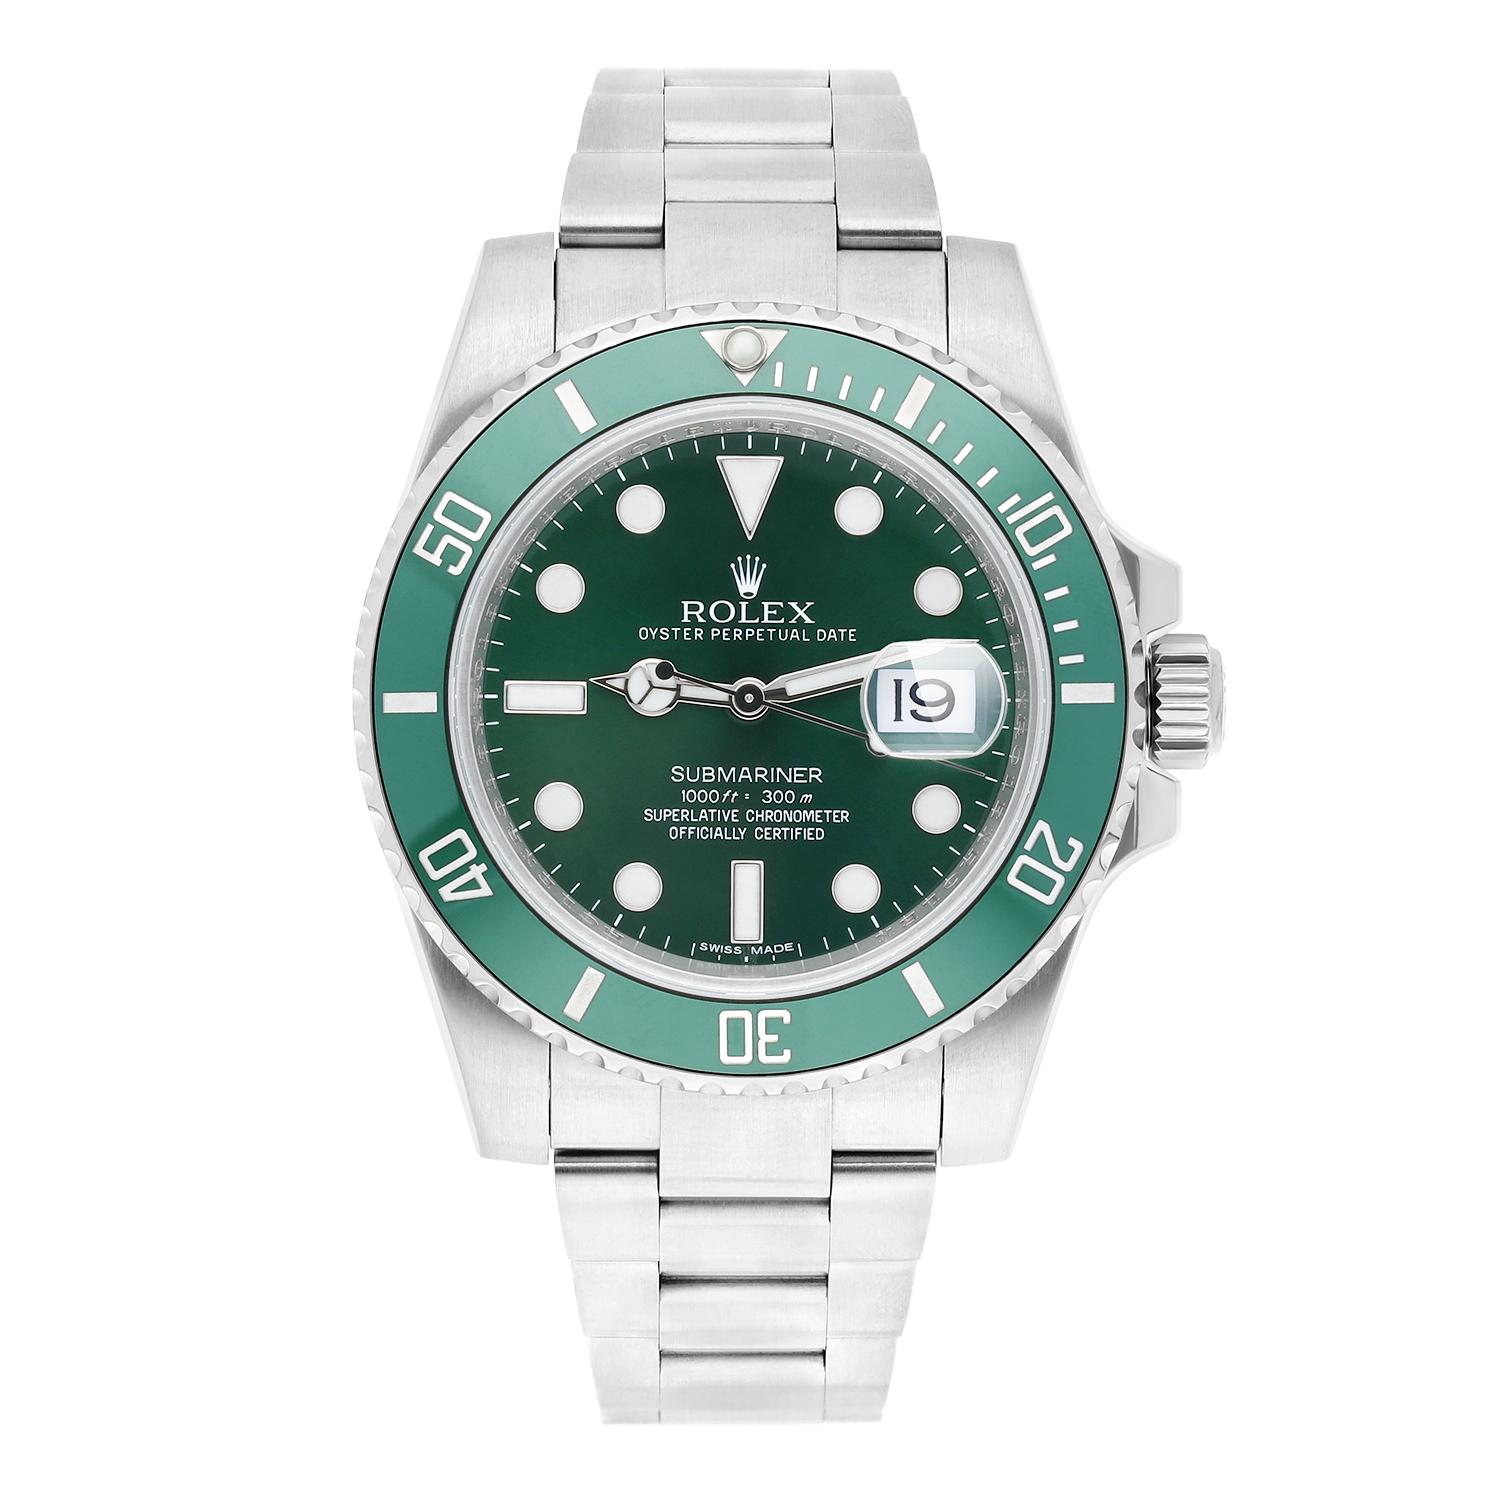 Tauchen Sie ein in den Luxus mit der Rolex Submariner 40mm Date 116610LV HULK - ein atemberaubender Zeitmesser, der mühelos Stil und Präzision verbindet. Diese kultige Uhr mit ihrer leuchtend grünen Keramiklünette und dem passenden Zifferblatt